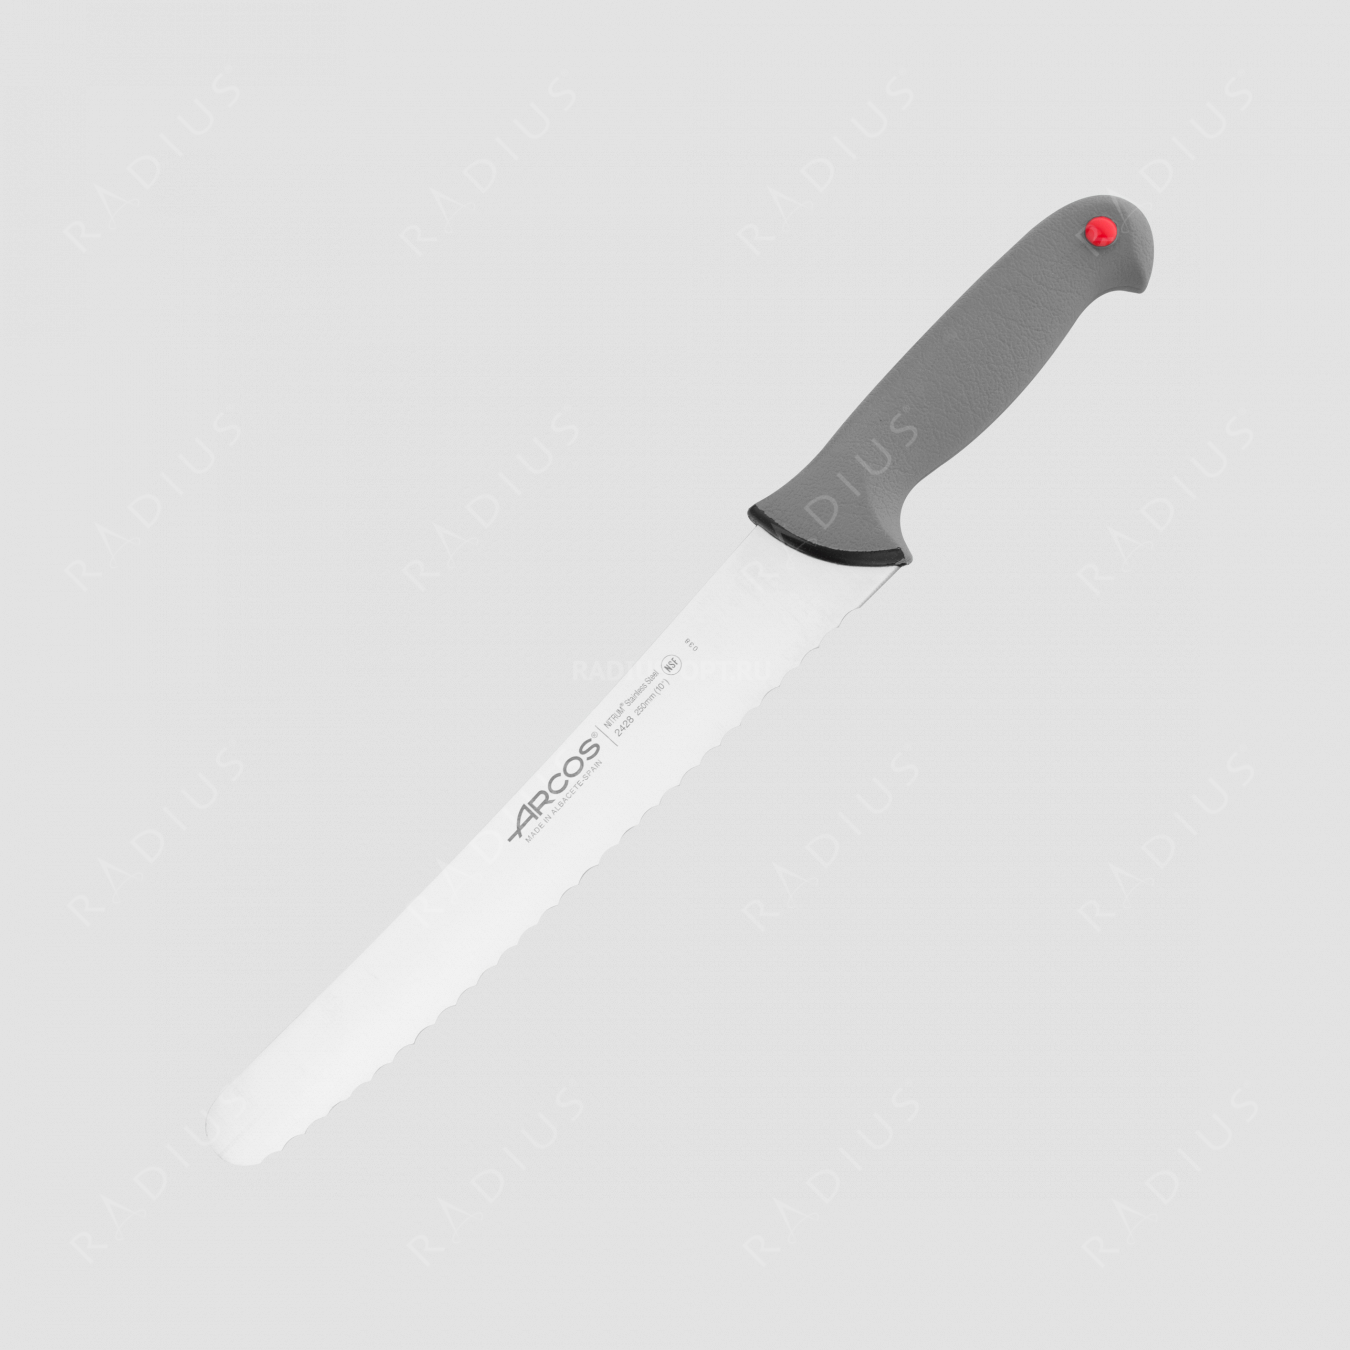 Нож кухонный для хлеба 25 см, серия Colour-prof, ARCOS, Испания